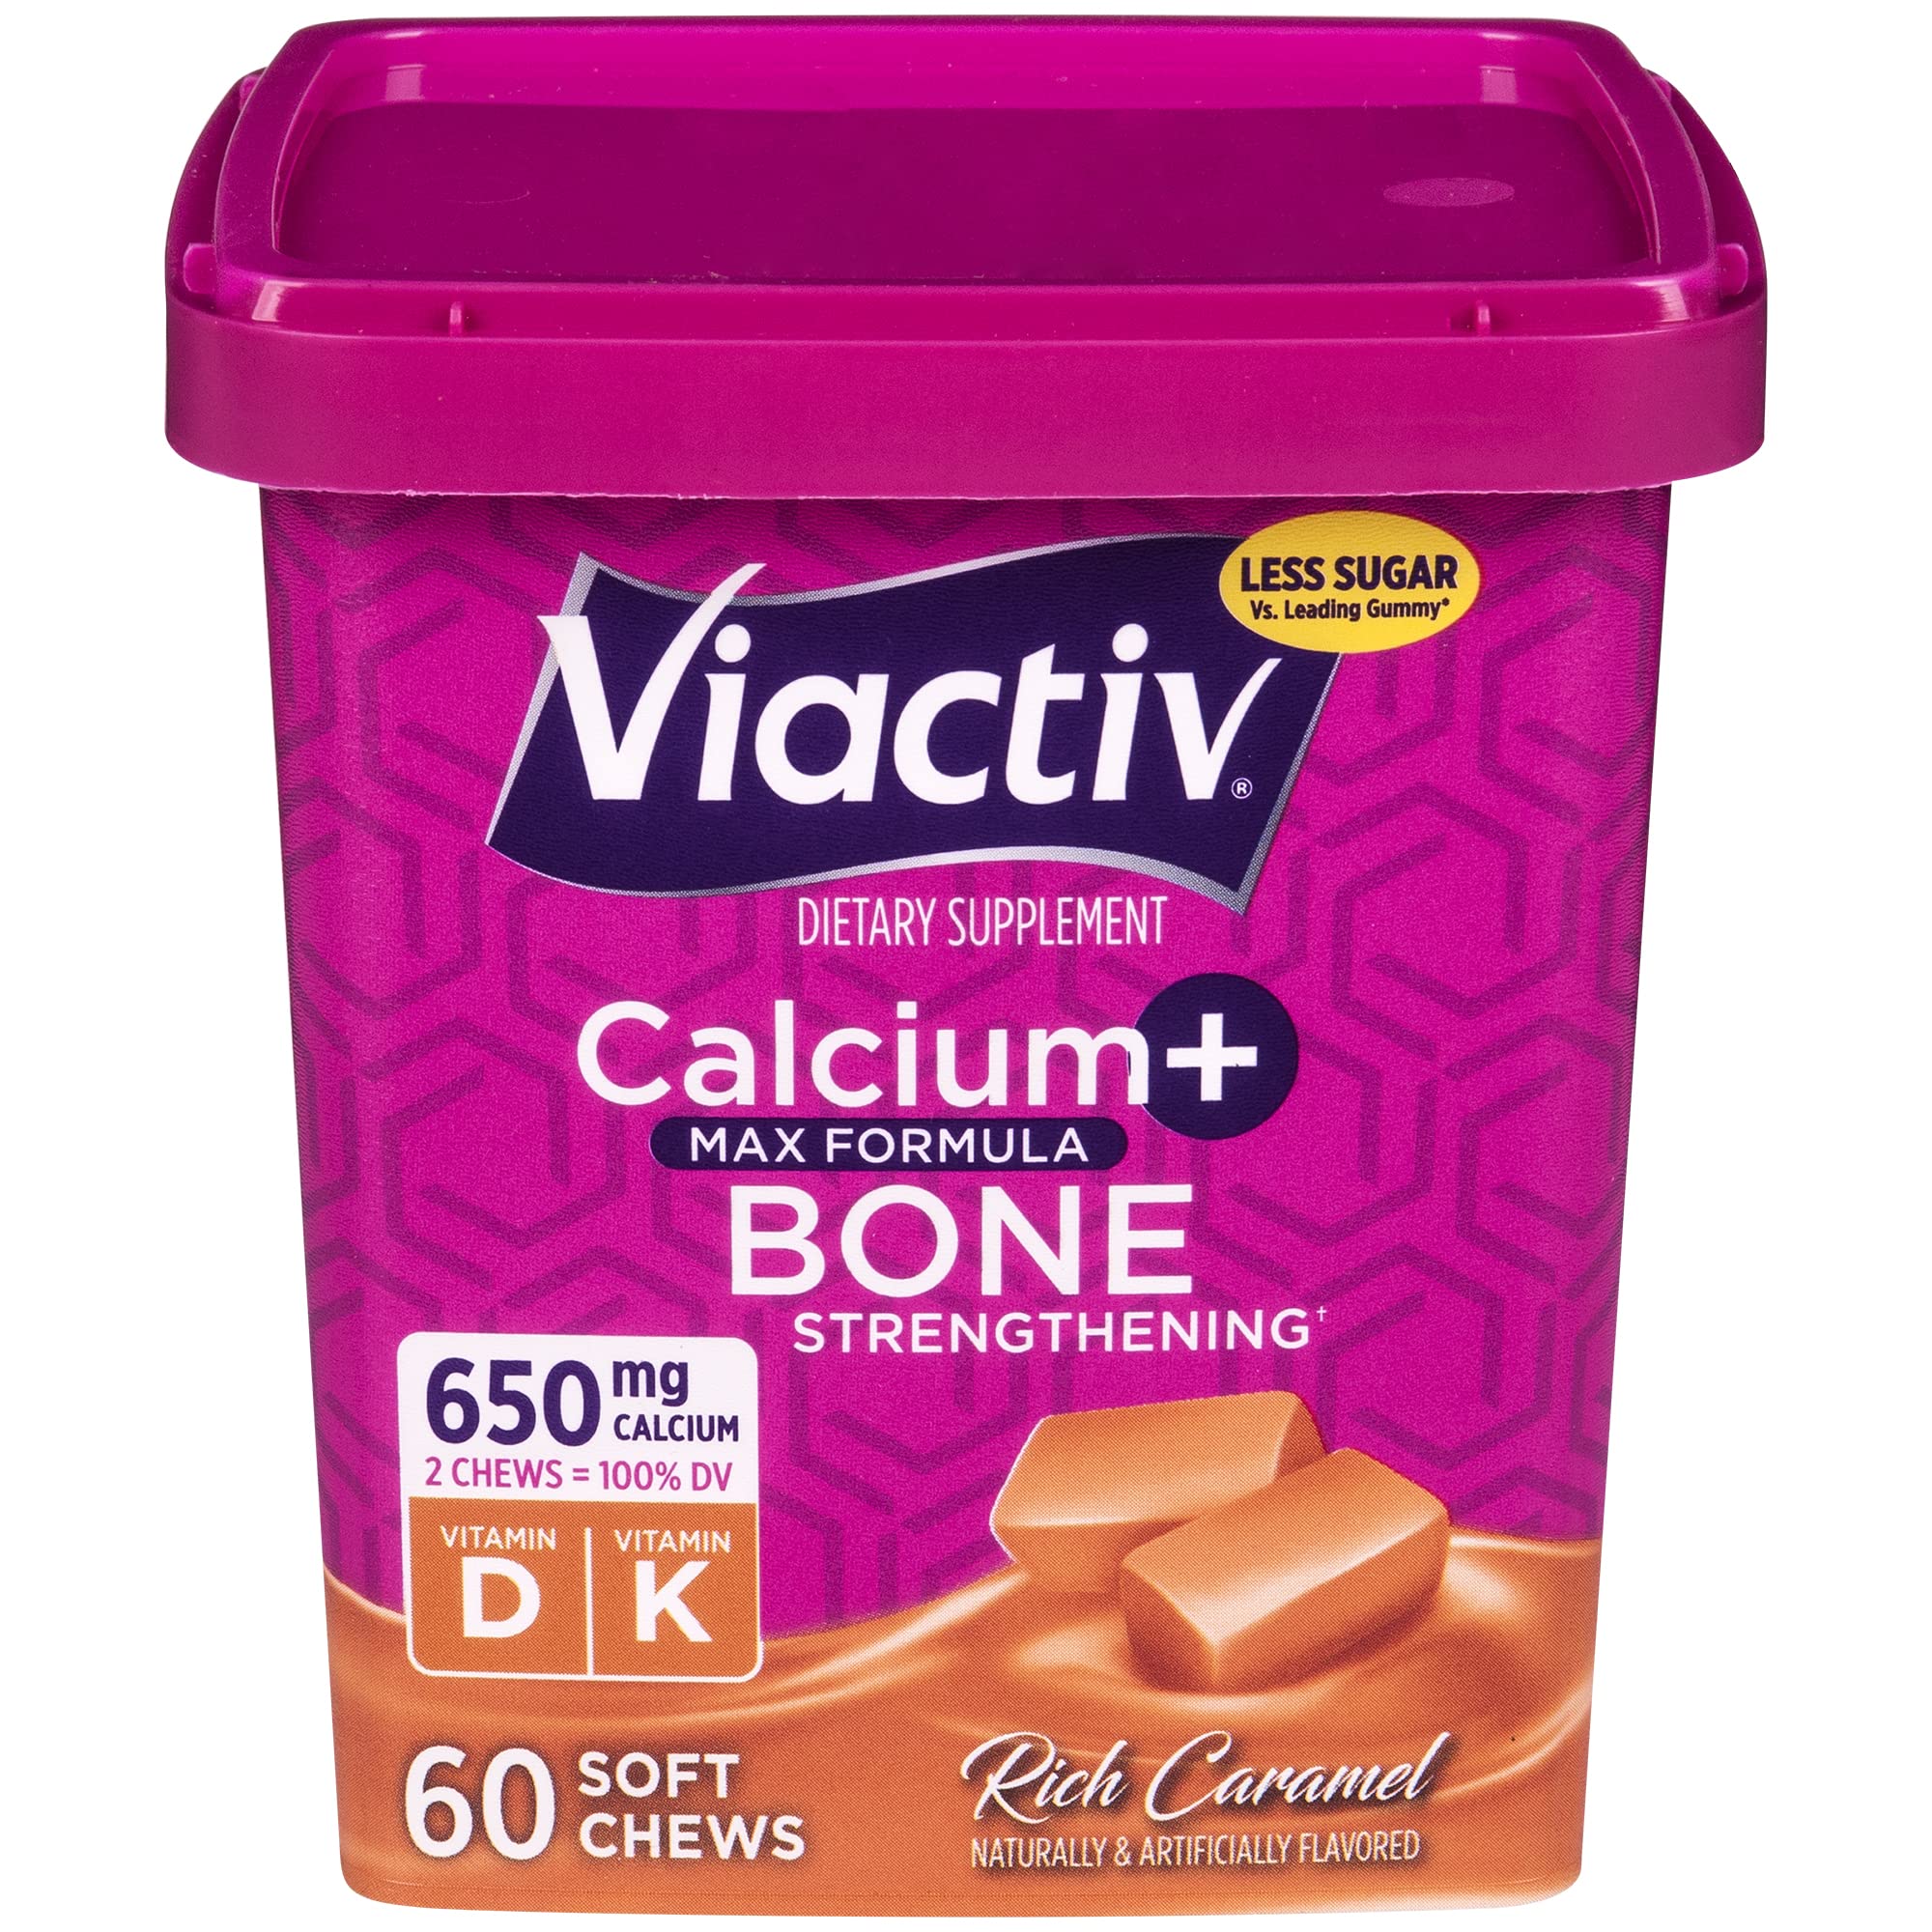 Viactiv Calcium +Vitamin D3 Supplement Soft Chews, Caramel & Calcium +Vitamin D3 Supplement Soft Chews, Milk Chocolate, 60 Chews - Calcium Dietary Supplement for Bone Health